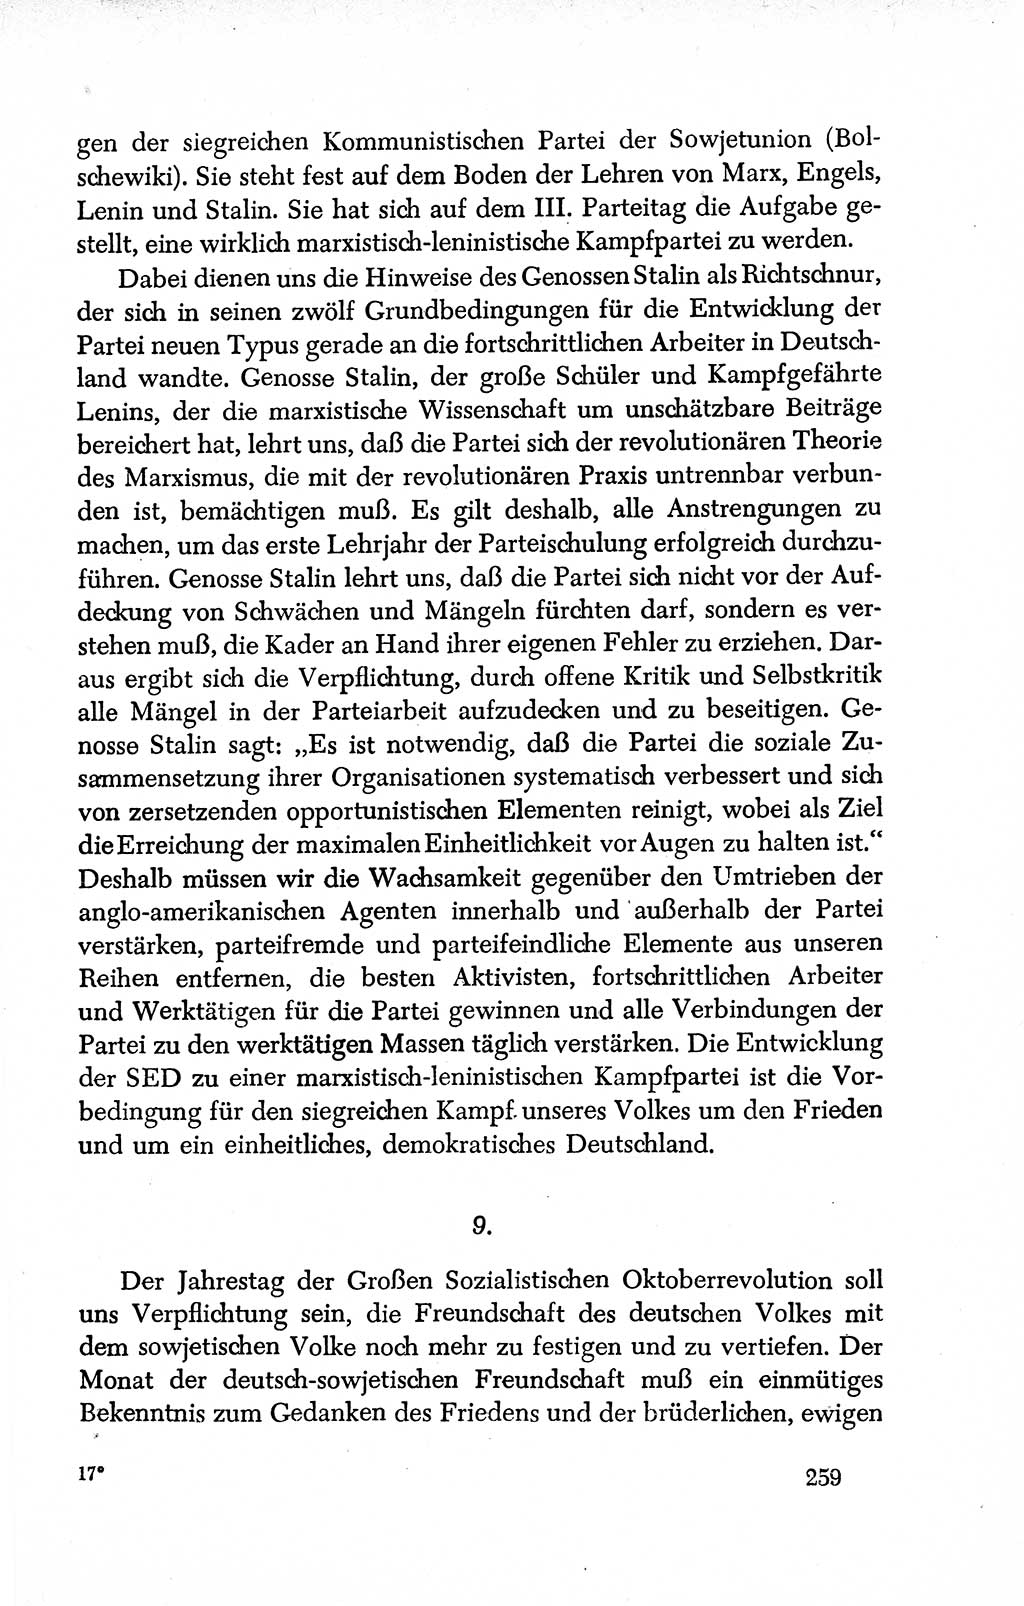 Dokumente der Sozialistischen Einheitspartei Deutschlands (SED) [Deutsche Demokratische Republik (DDR)] 1950-1952, Seite 259 (Dok. SED DDR 1950-1952, S. 259)